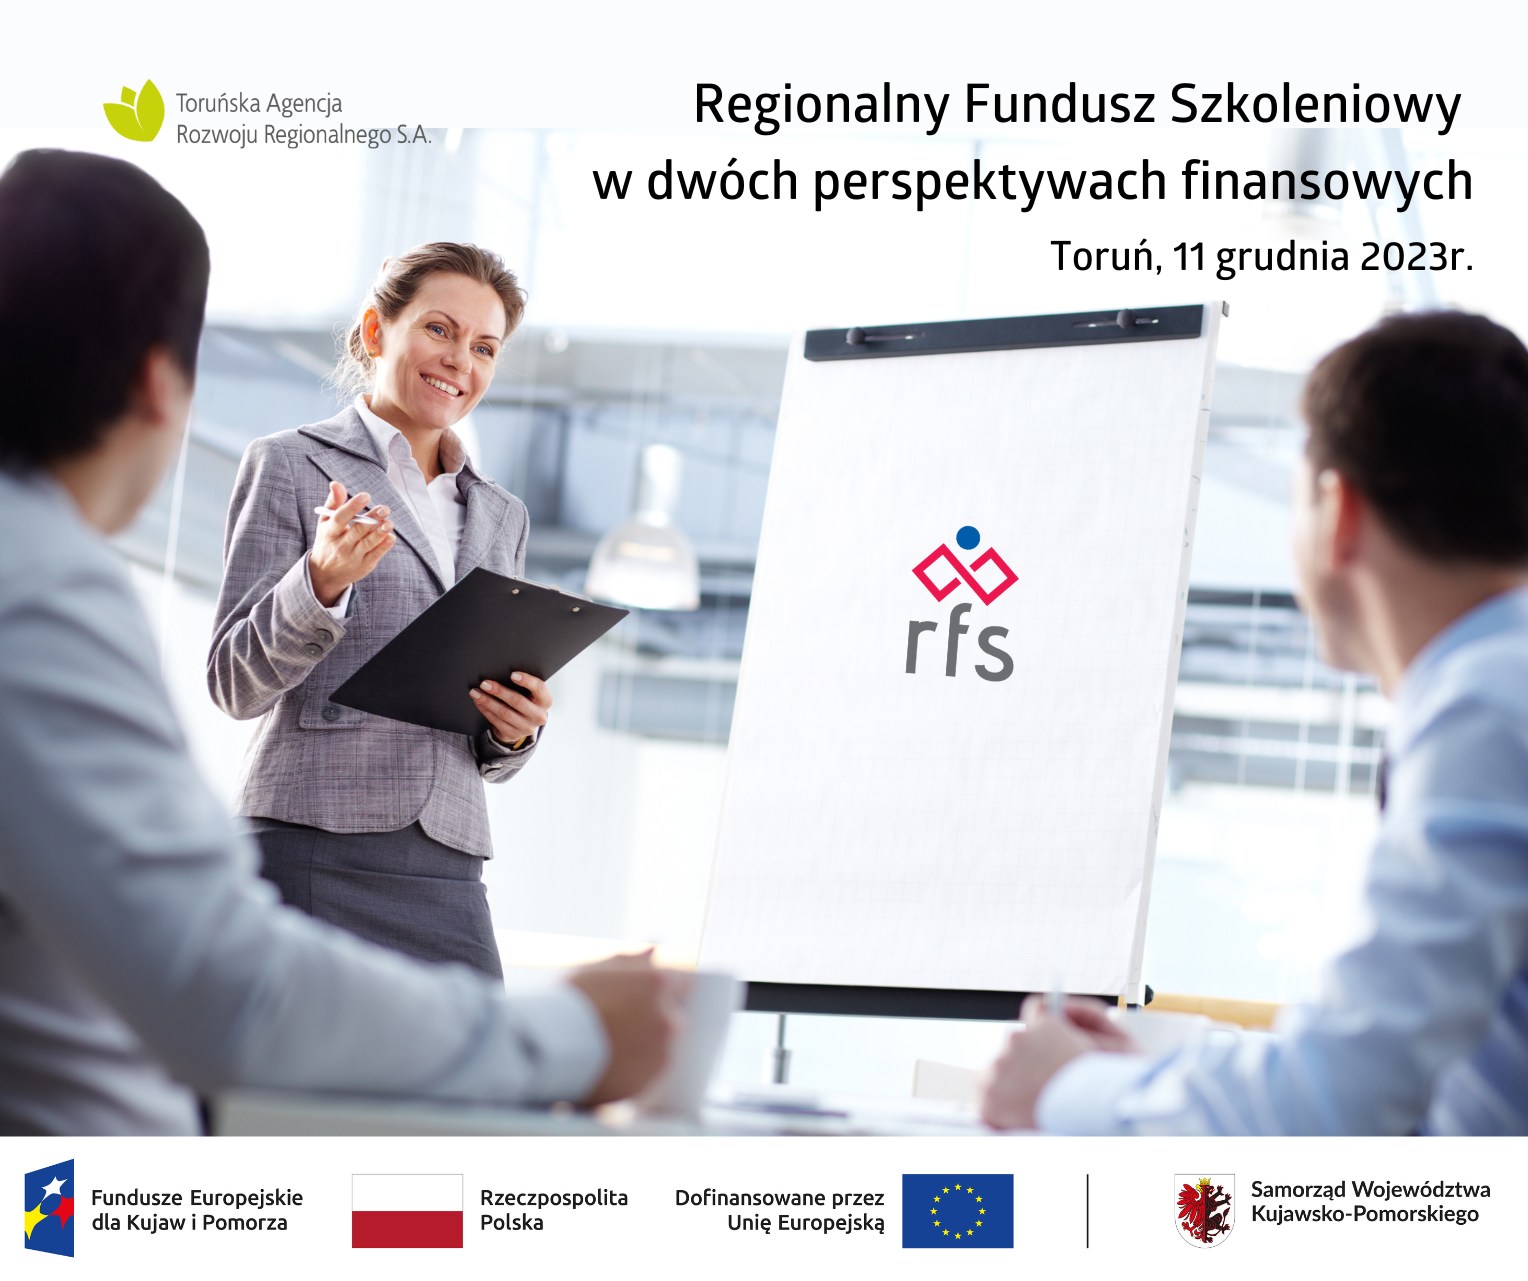 Regionalny Fundusz Szkoleniowy w dwóch perspektywach finansowych. Konferencja w Toruniu 11 grudnia 2023 r.